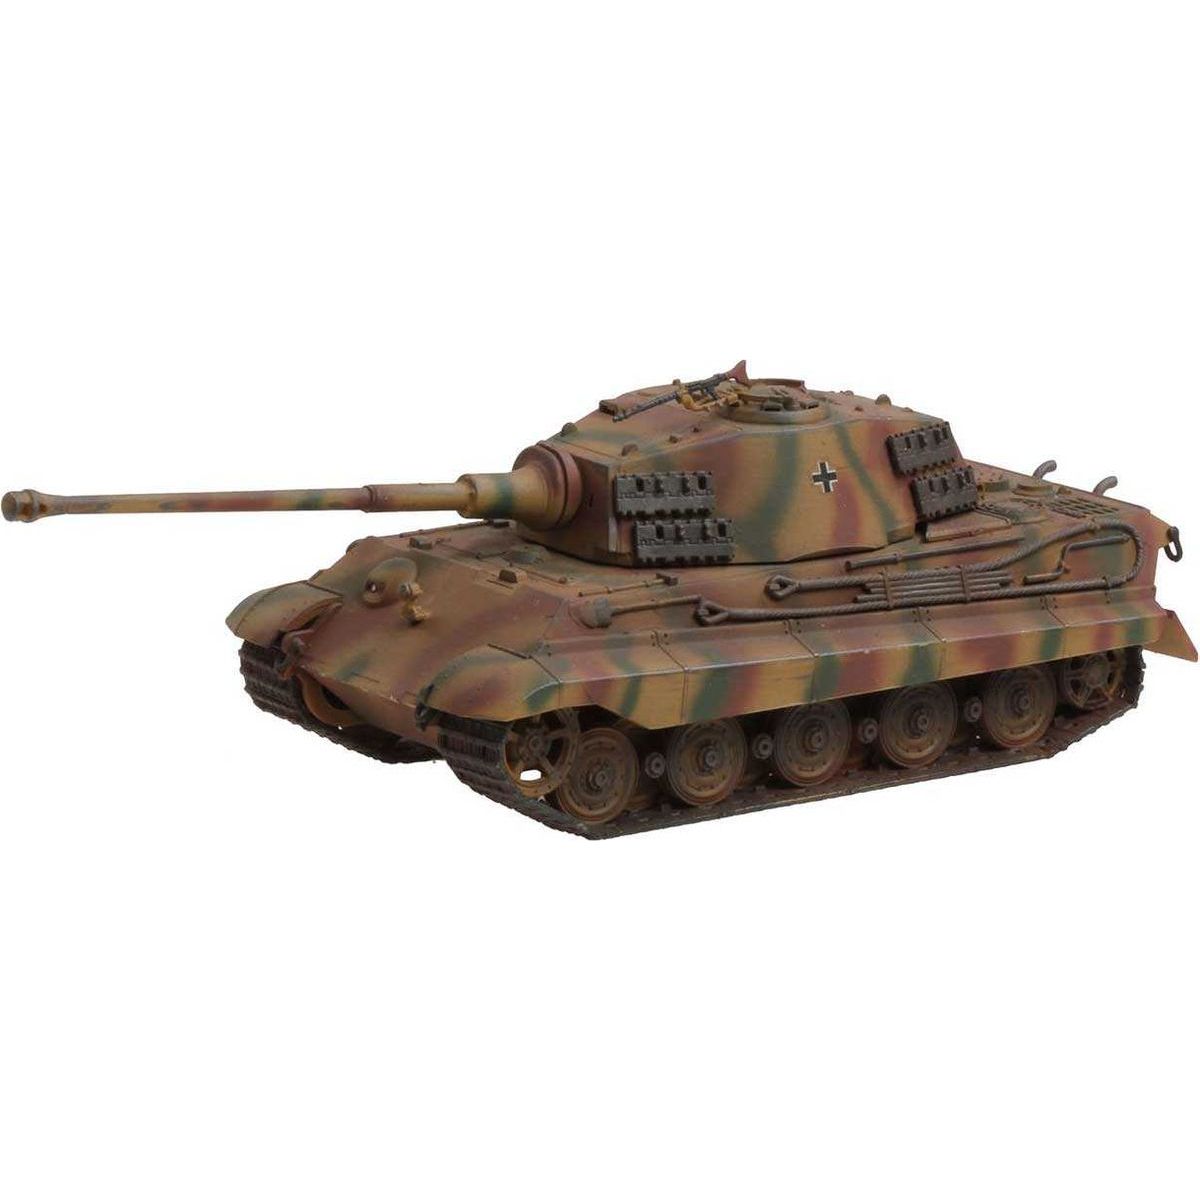 Revell Plastic ModelKit tank 03129 Tiger II Ausf. B 1:72